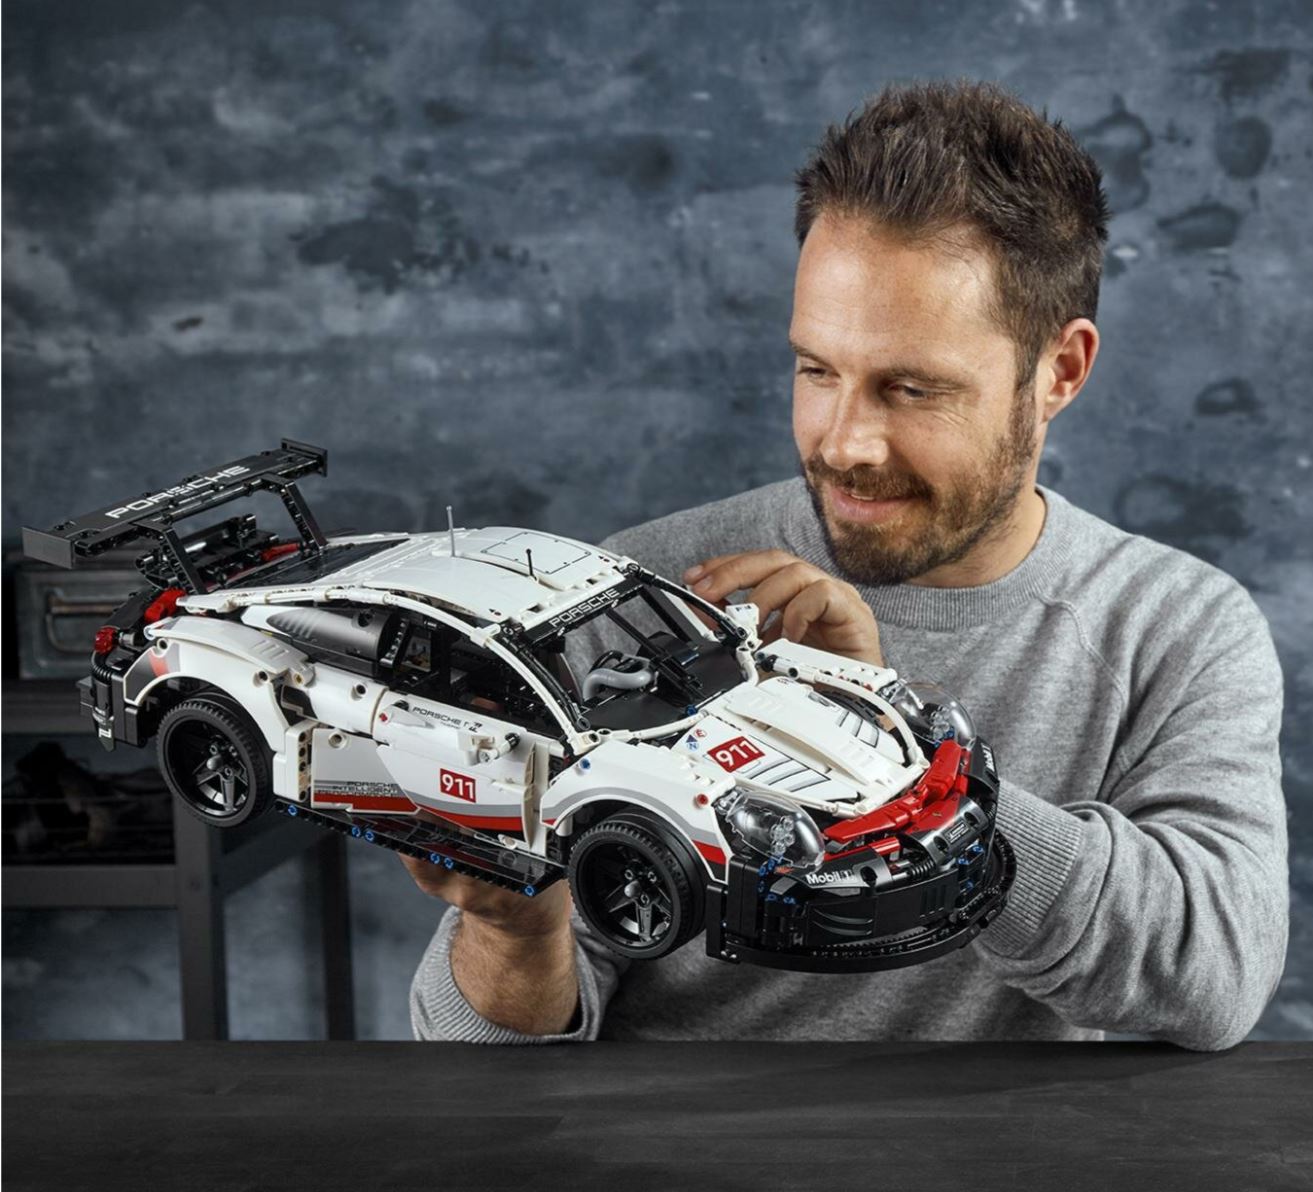 LEGO Technic Porsche 911